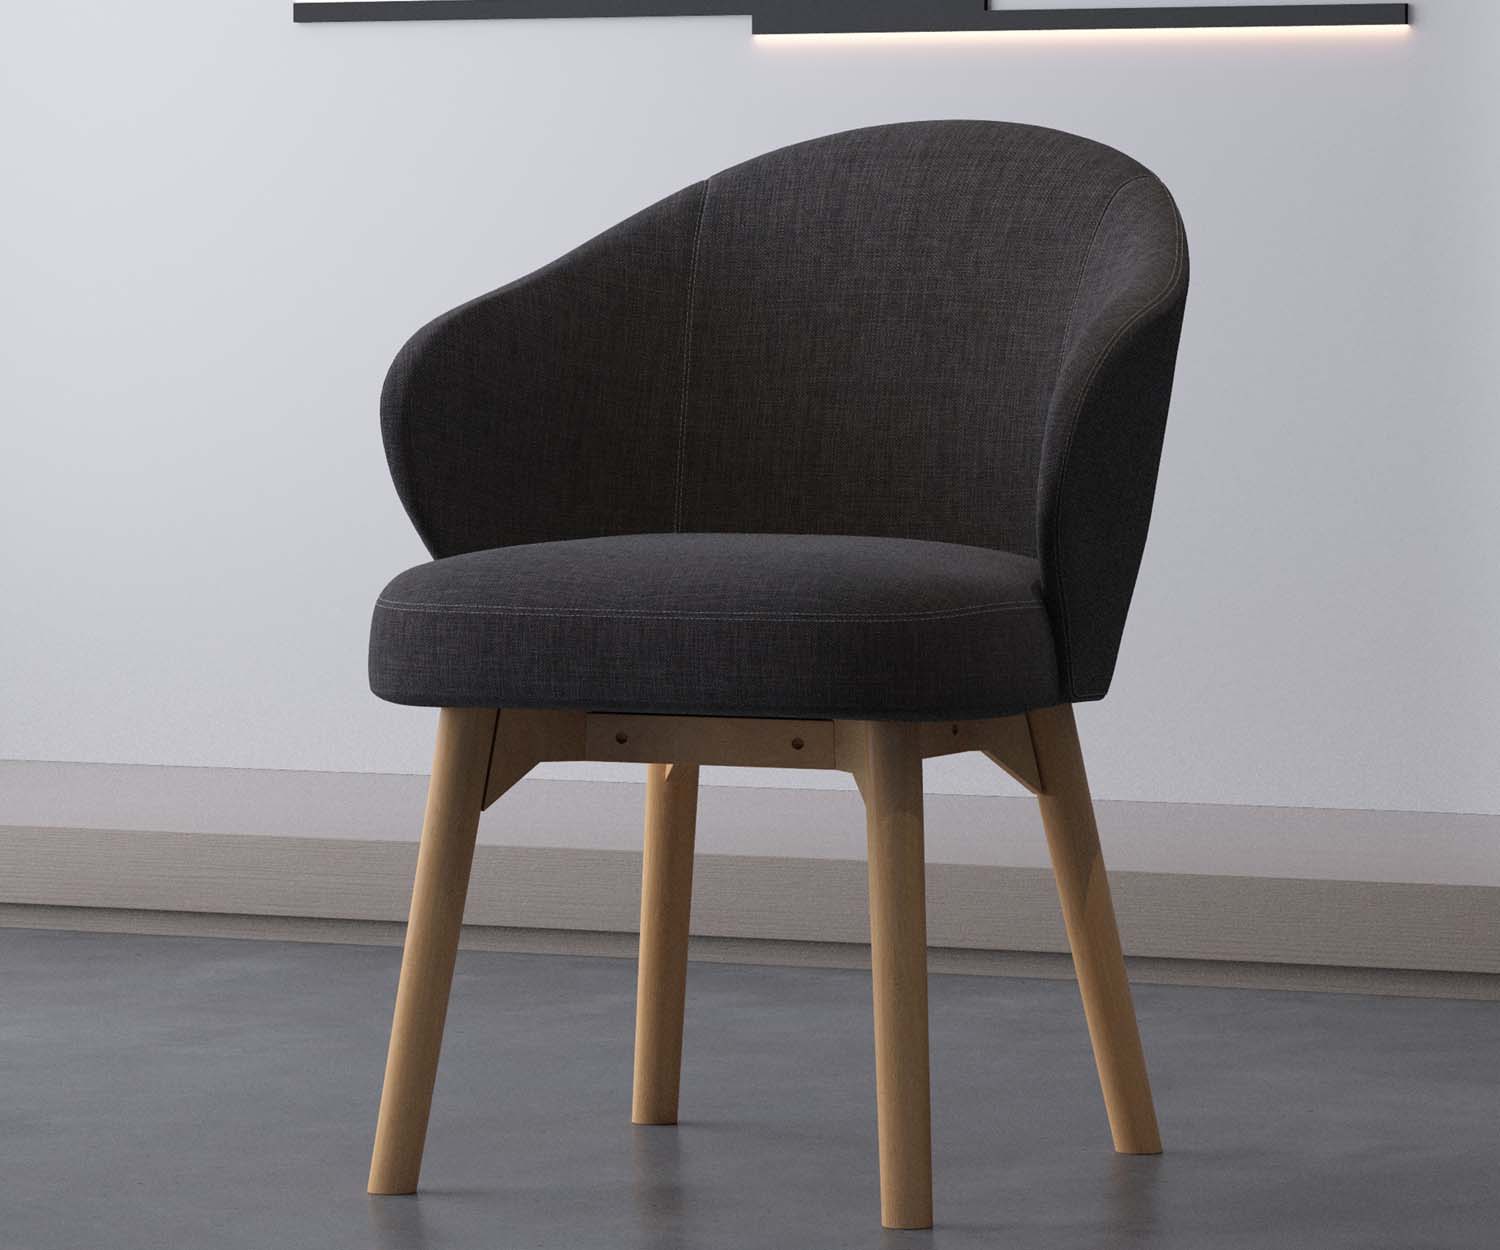 Hugo armchair made in Australia by FHG